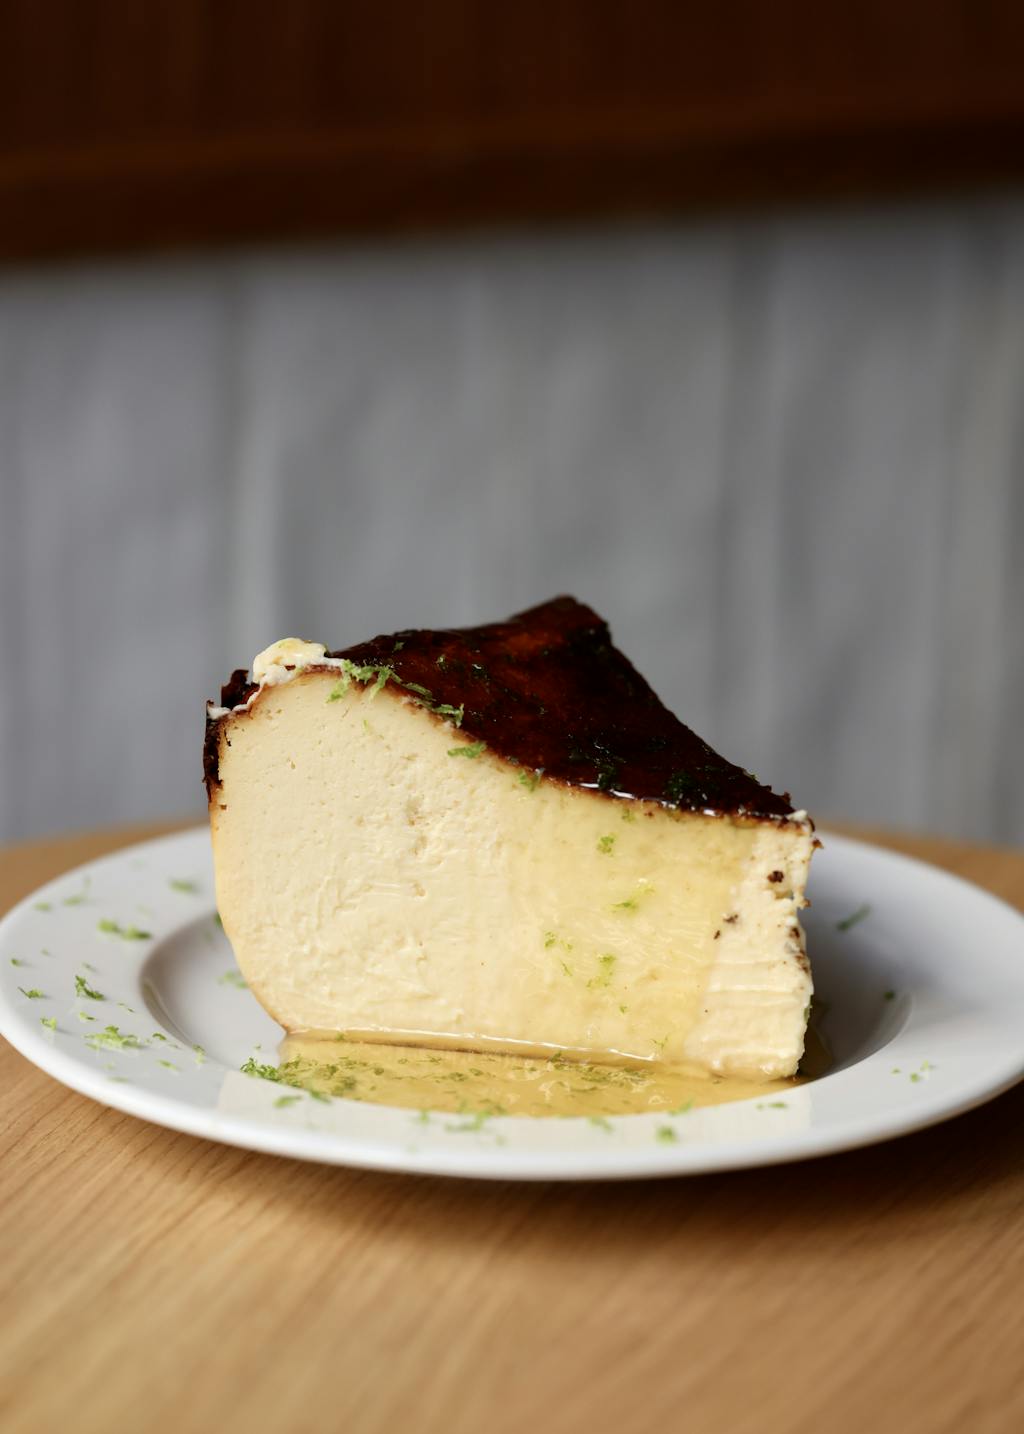 Le cheesecake de Nakatsu